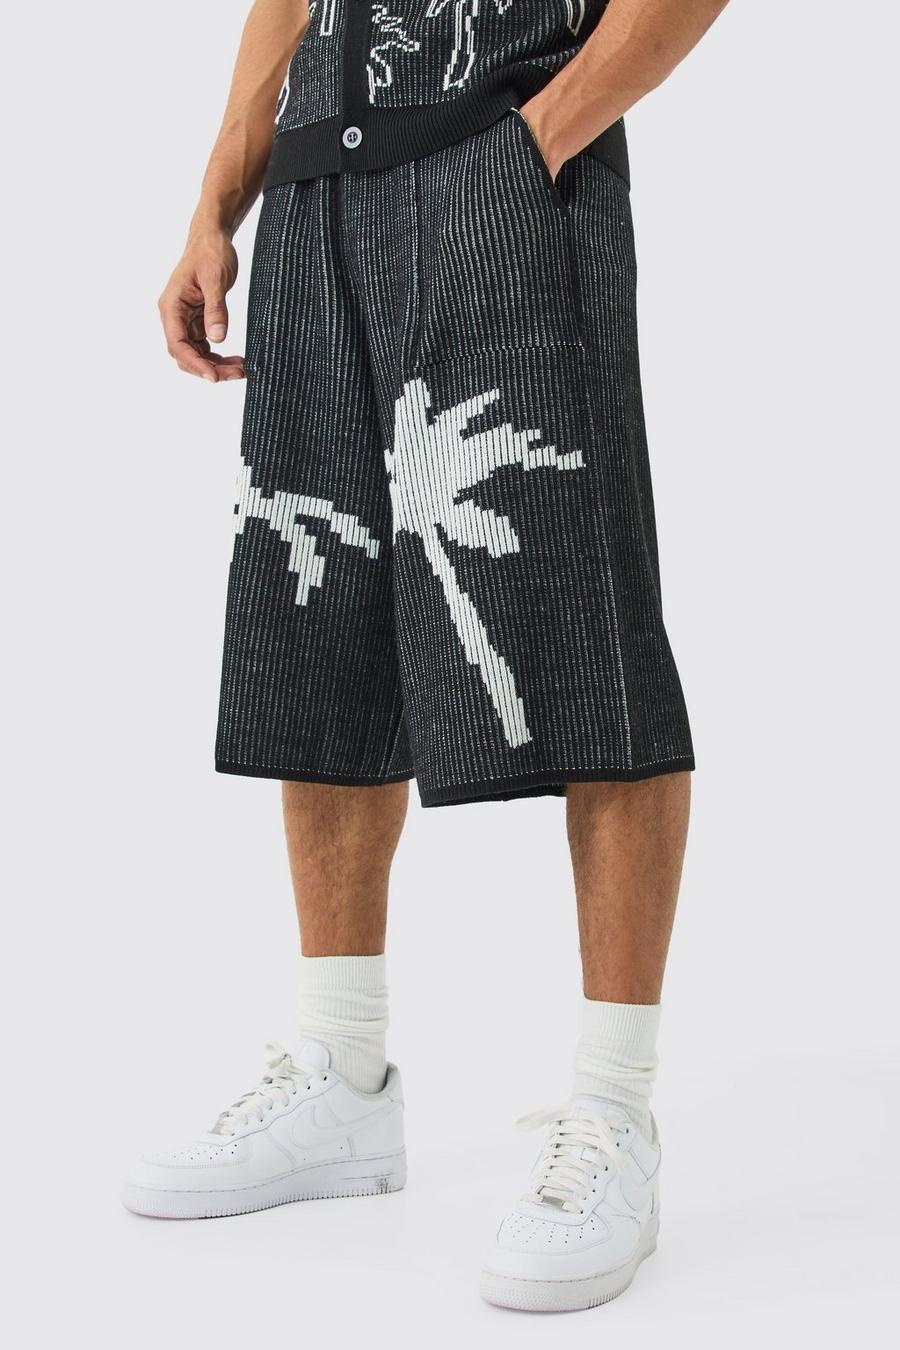 Pantaloni tuta in maglia a coste in jacquard con palme, Black